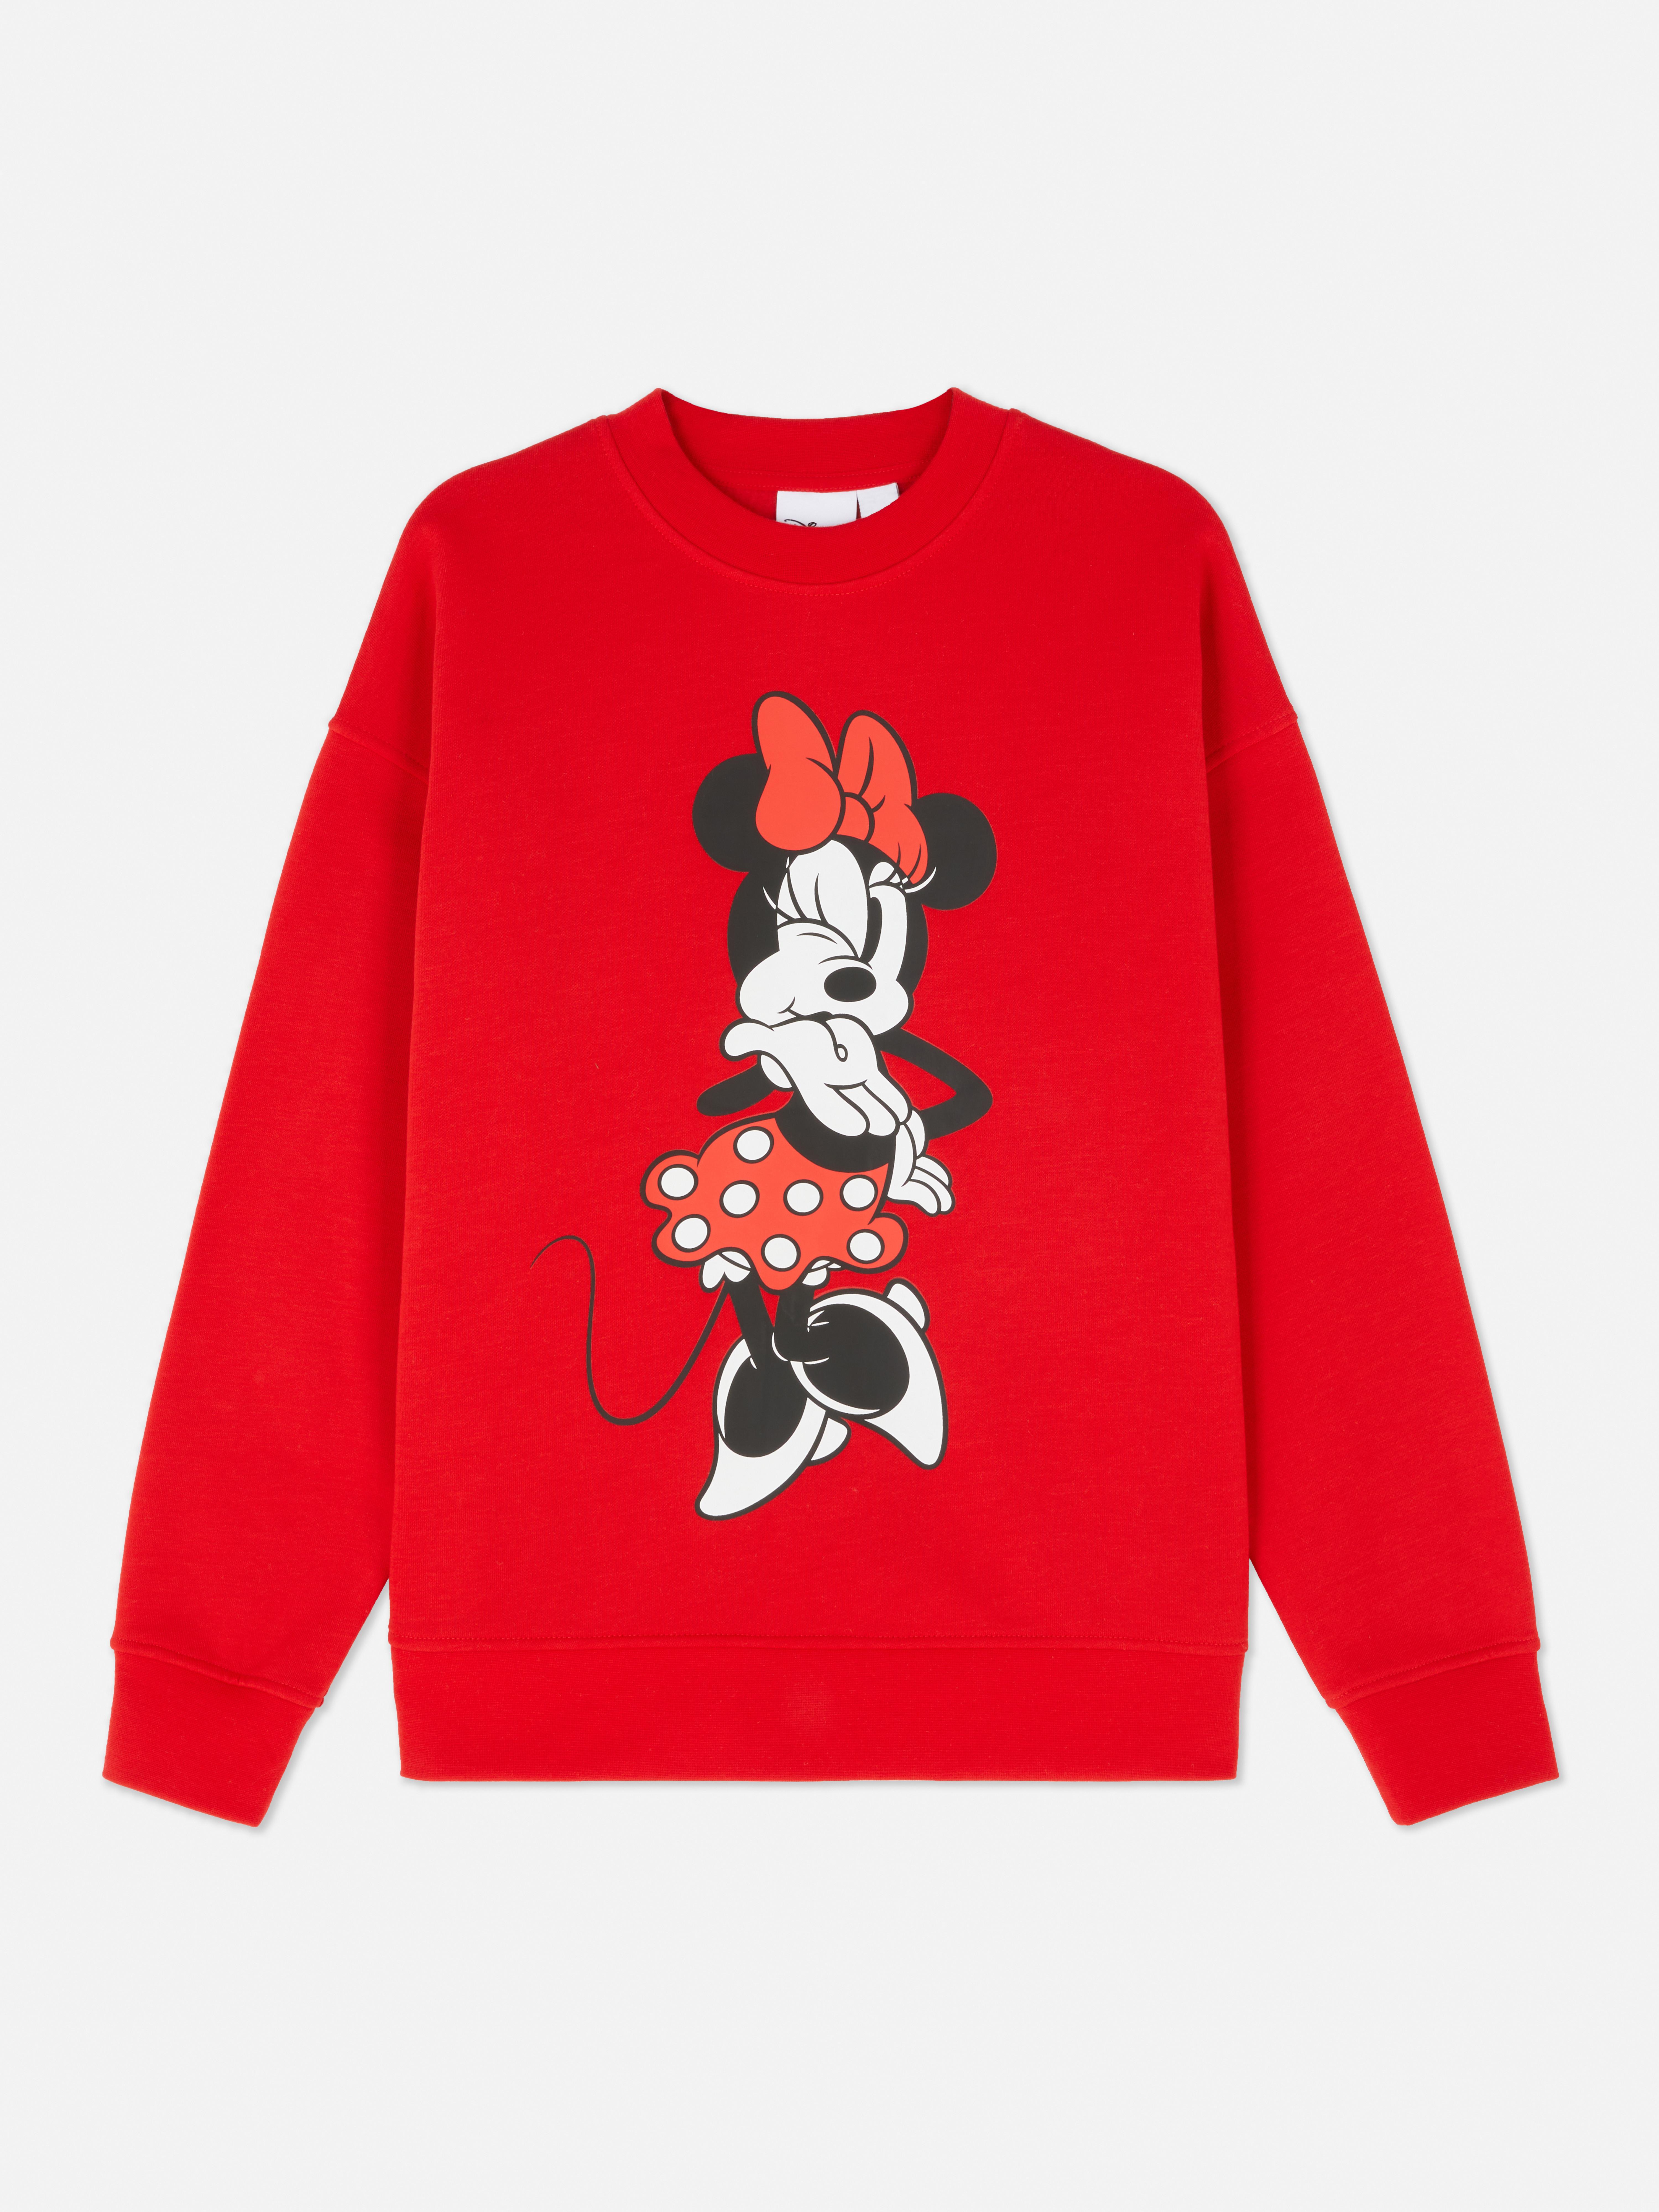 Sudadera de Minnie Mouse de Disney | Jerséis y sudaderas para mujer | Jerséis de mujer Ropa para mujer | Nuestra línea de moda femenina Todos los productos Primark | Primark España